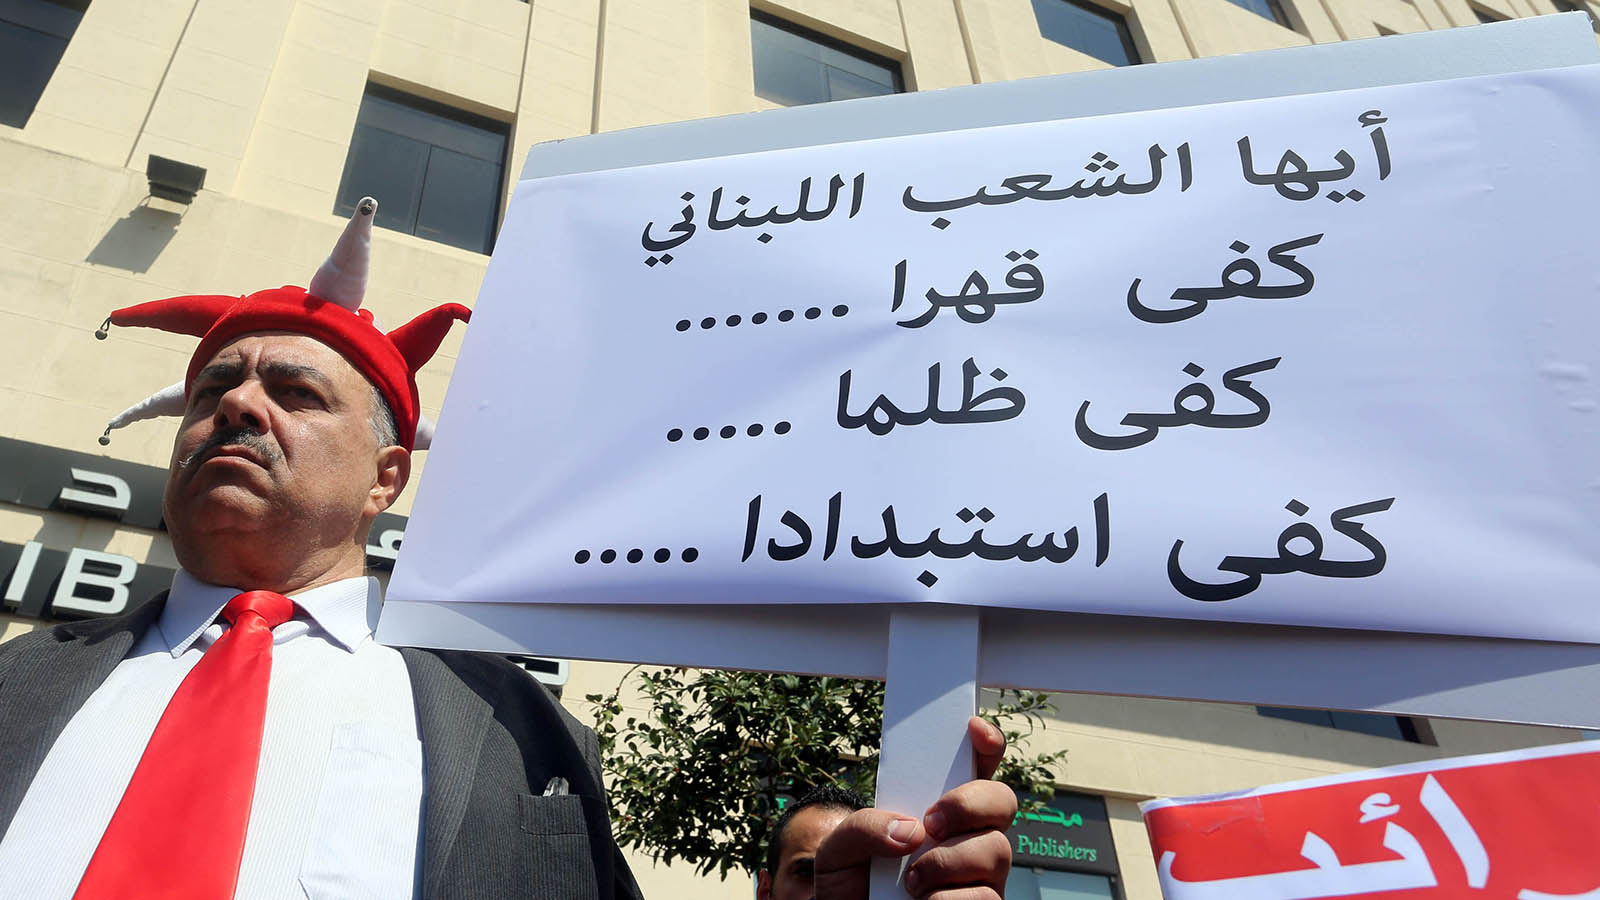 التلفزيونات اللبنانية "تظاهرت" أيضاً